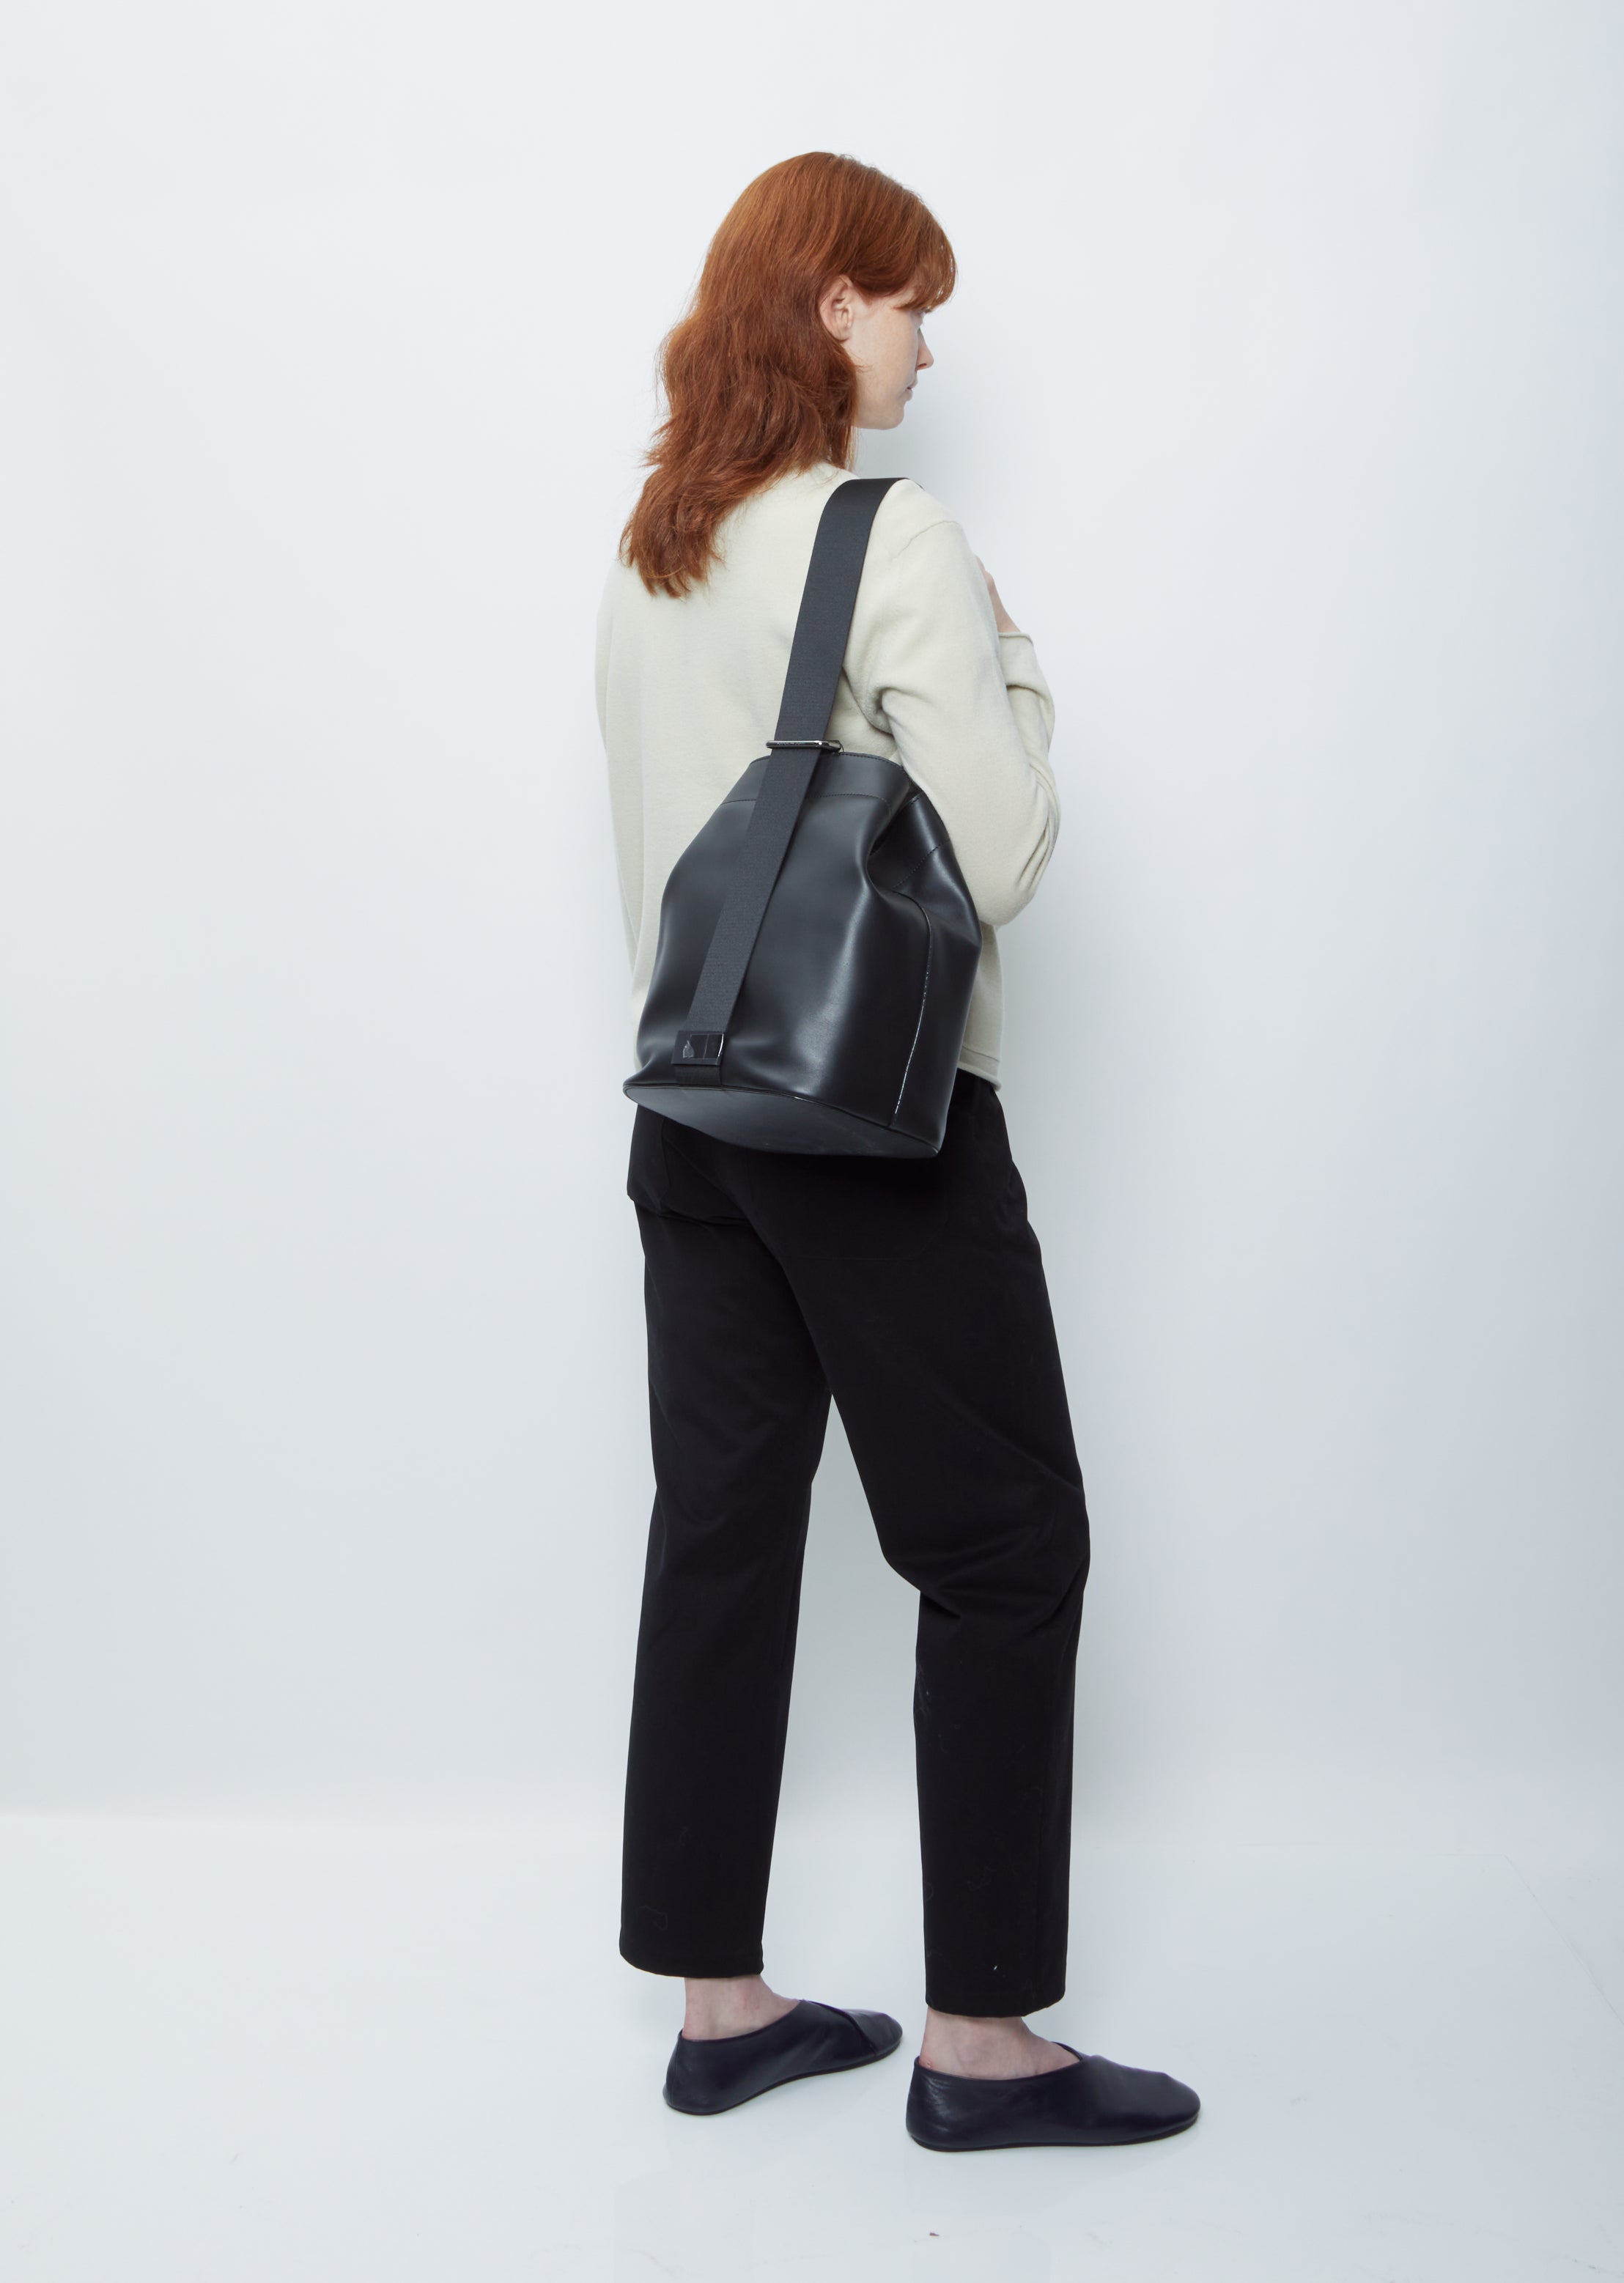 Buy AESTHER EKME Marin Maxi Shoulder Bag - Black At 30% Off